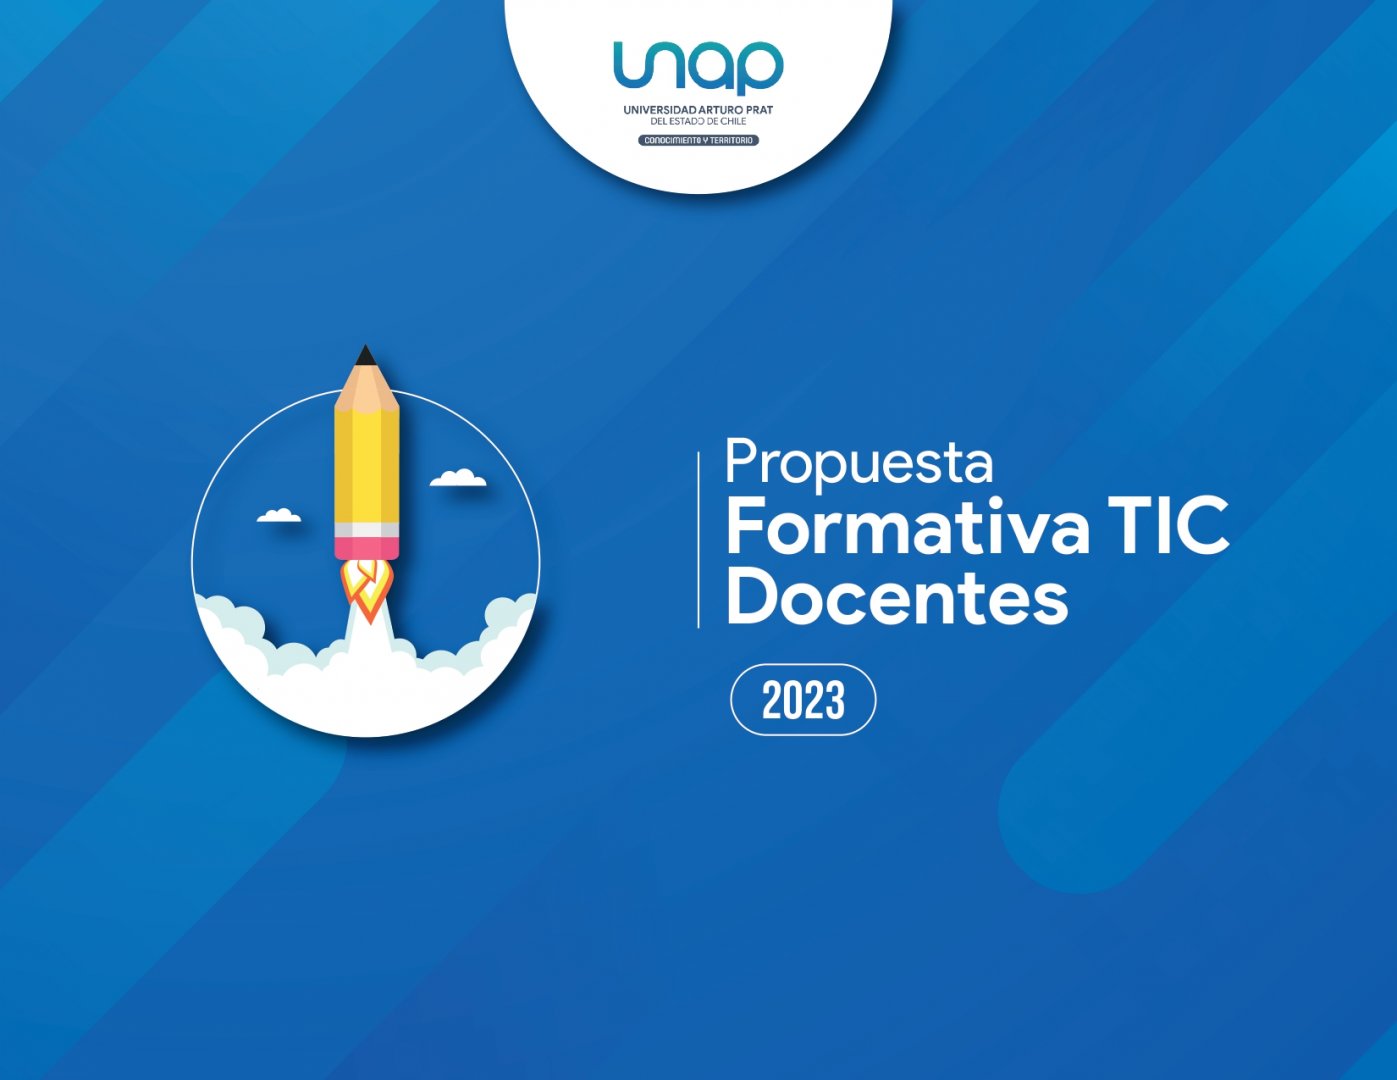 Propuesta Formativa TIC Docentes 2023